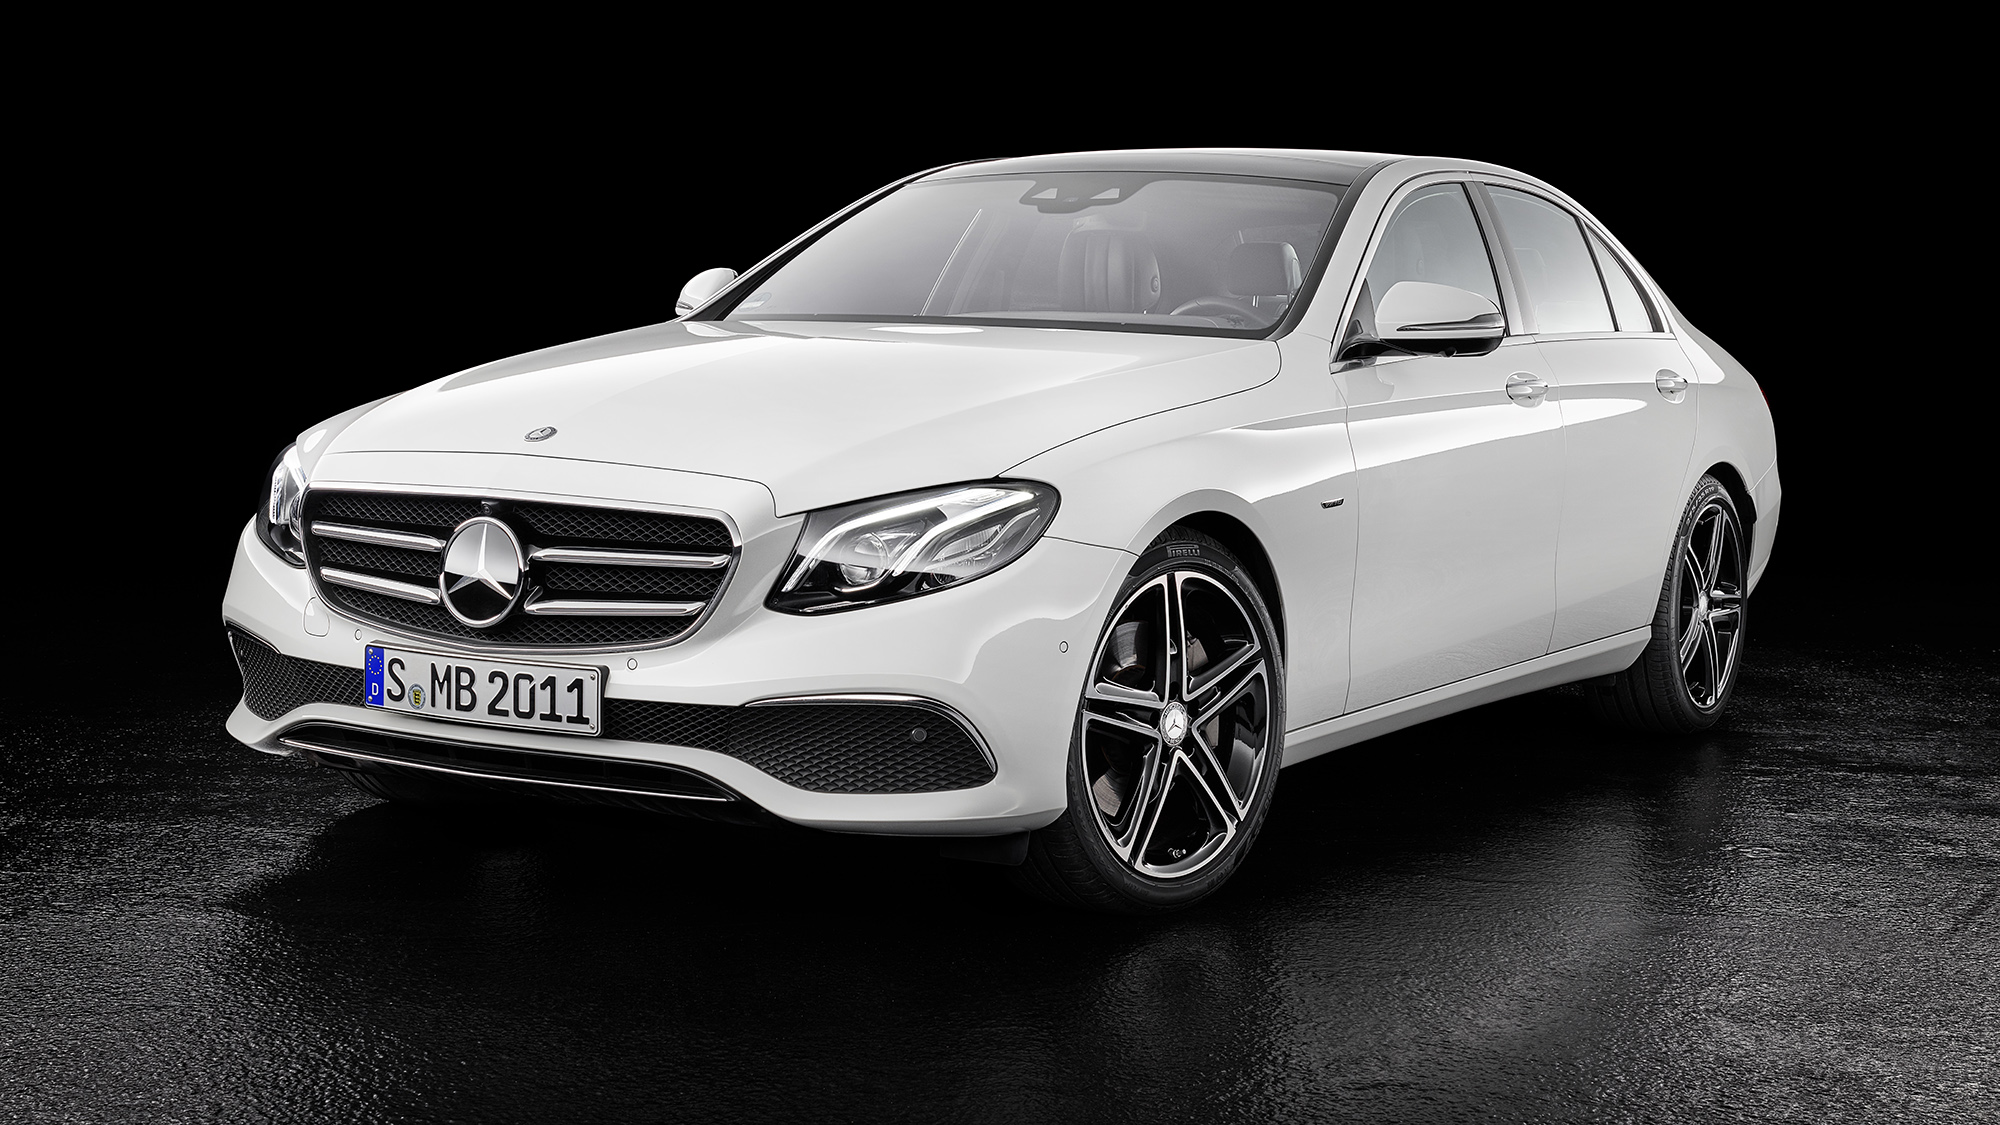 Đánh giá xe Mercedes E350 AMG 2020, thông số kỹ thuật, thiết kế, giá lăn bánh